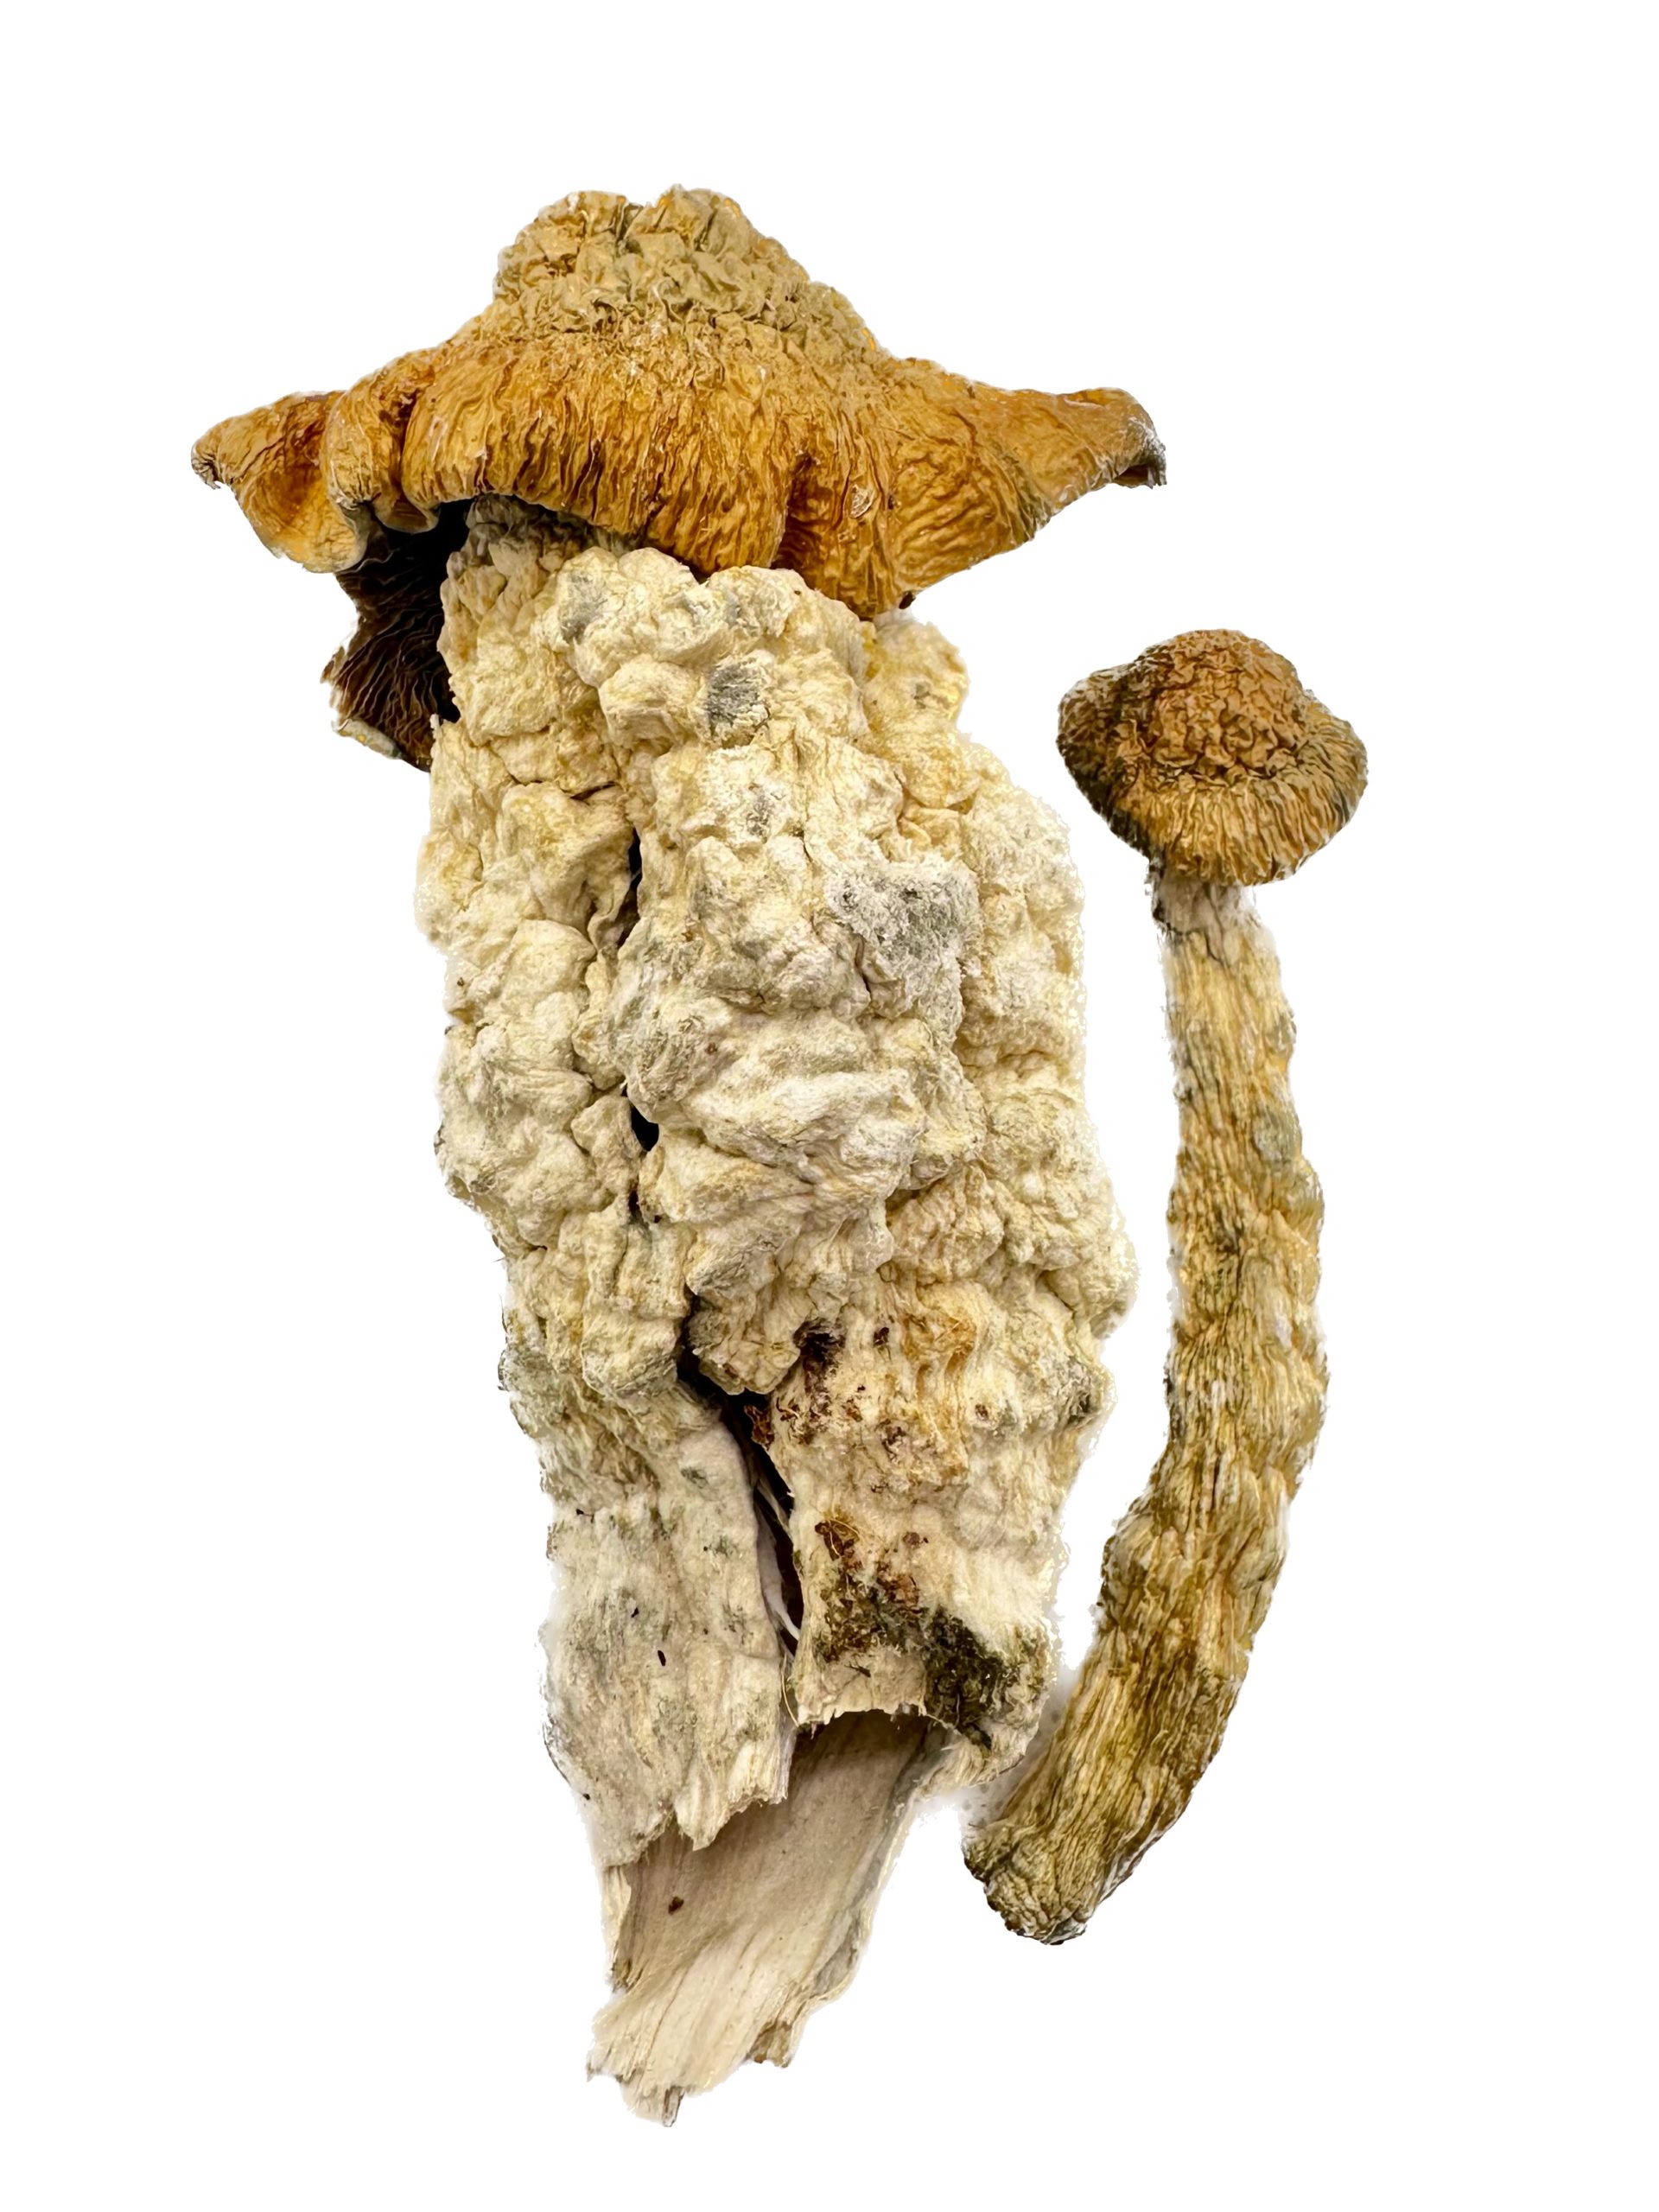 Liberty Cap – Dry Mushrooms